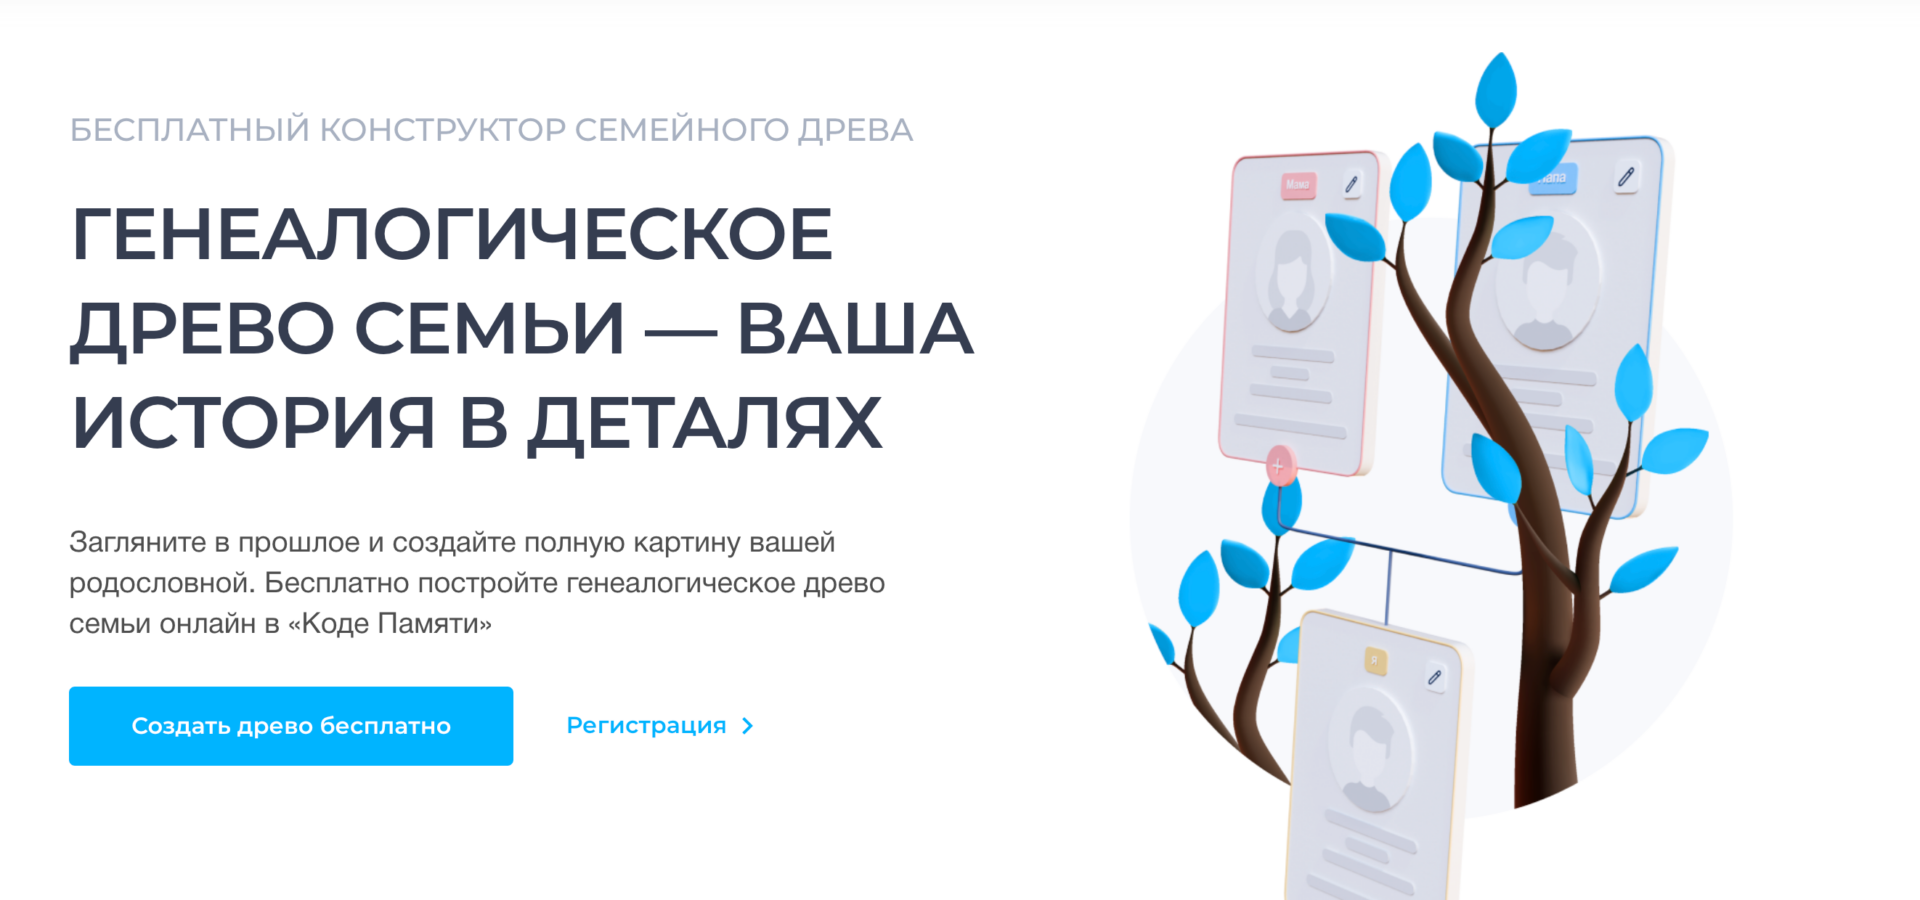 Вместо MyHeritage. В России запустился бесплатный сервис для создания генеалогического древа  